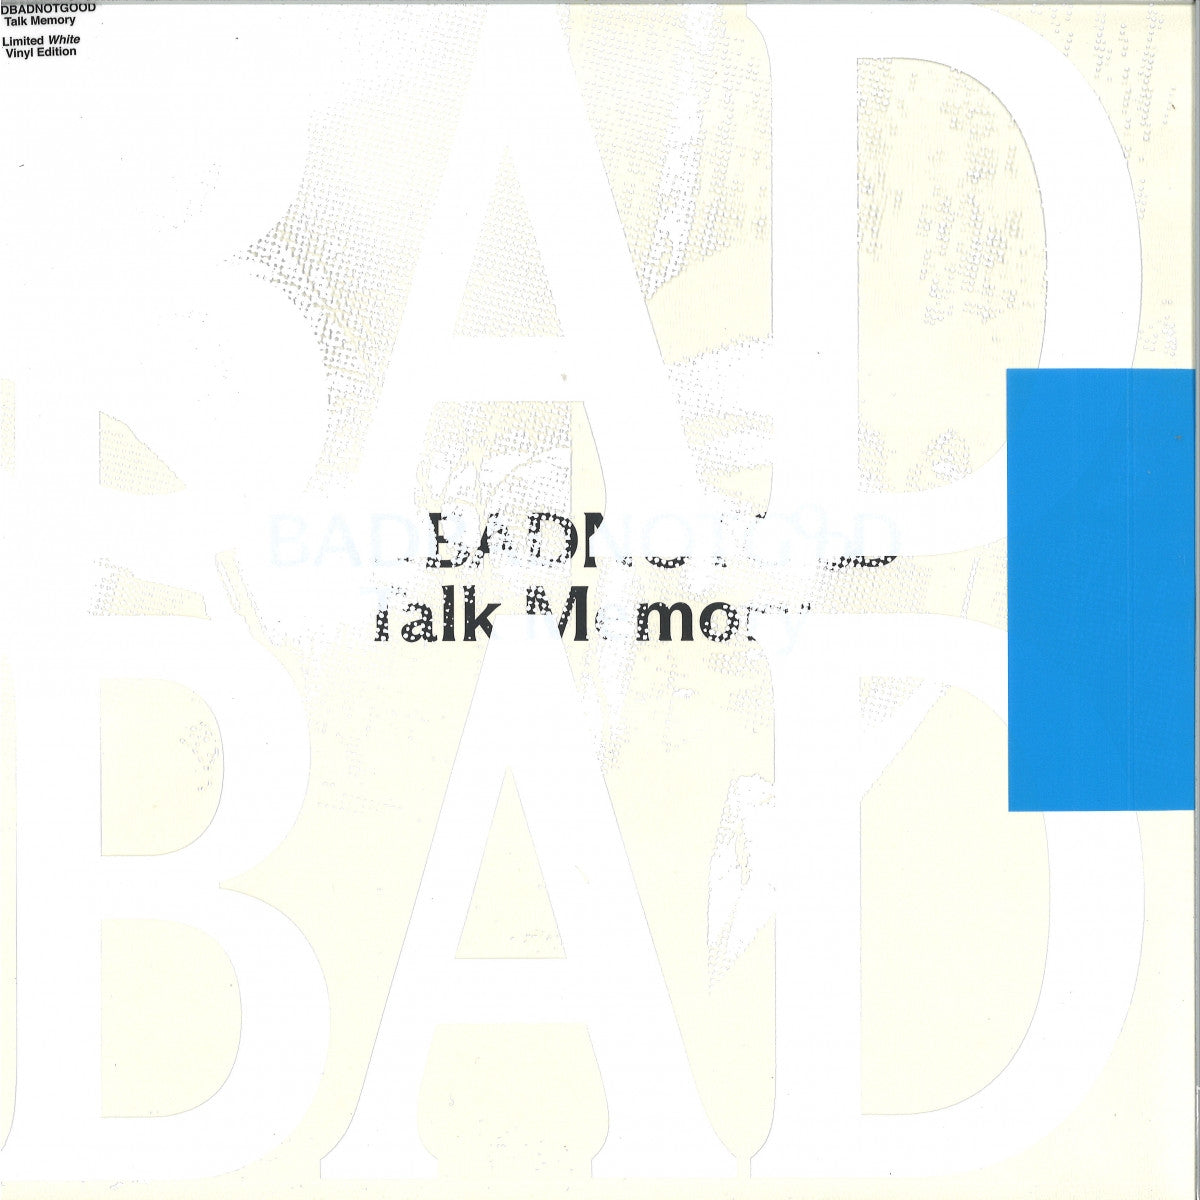 Talk Memory - Badbadnotgood - Vinyl